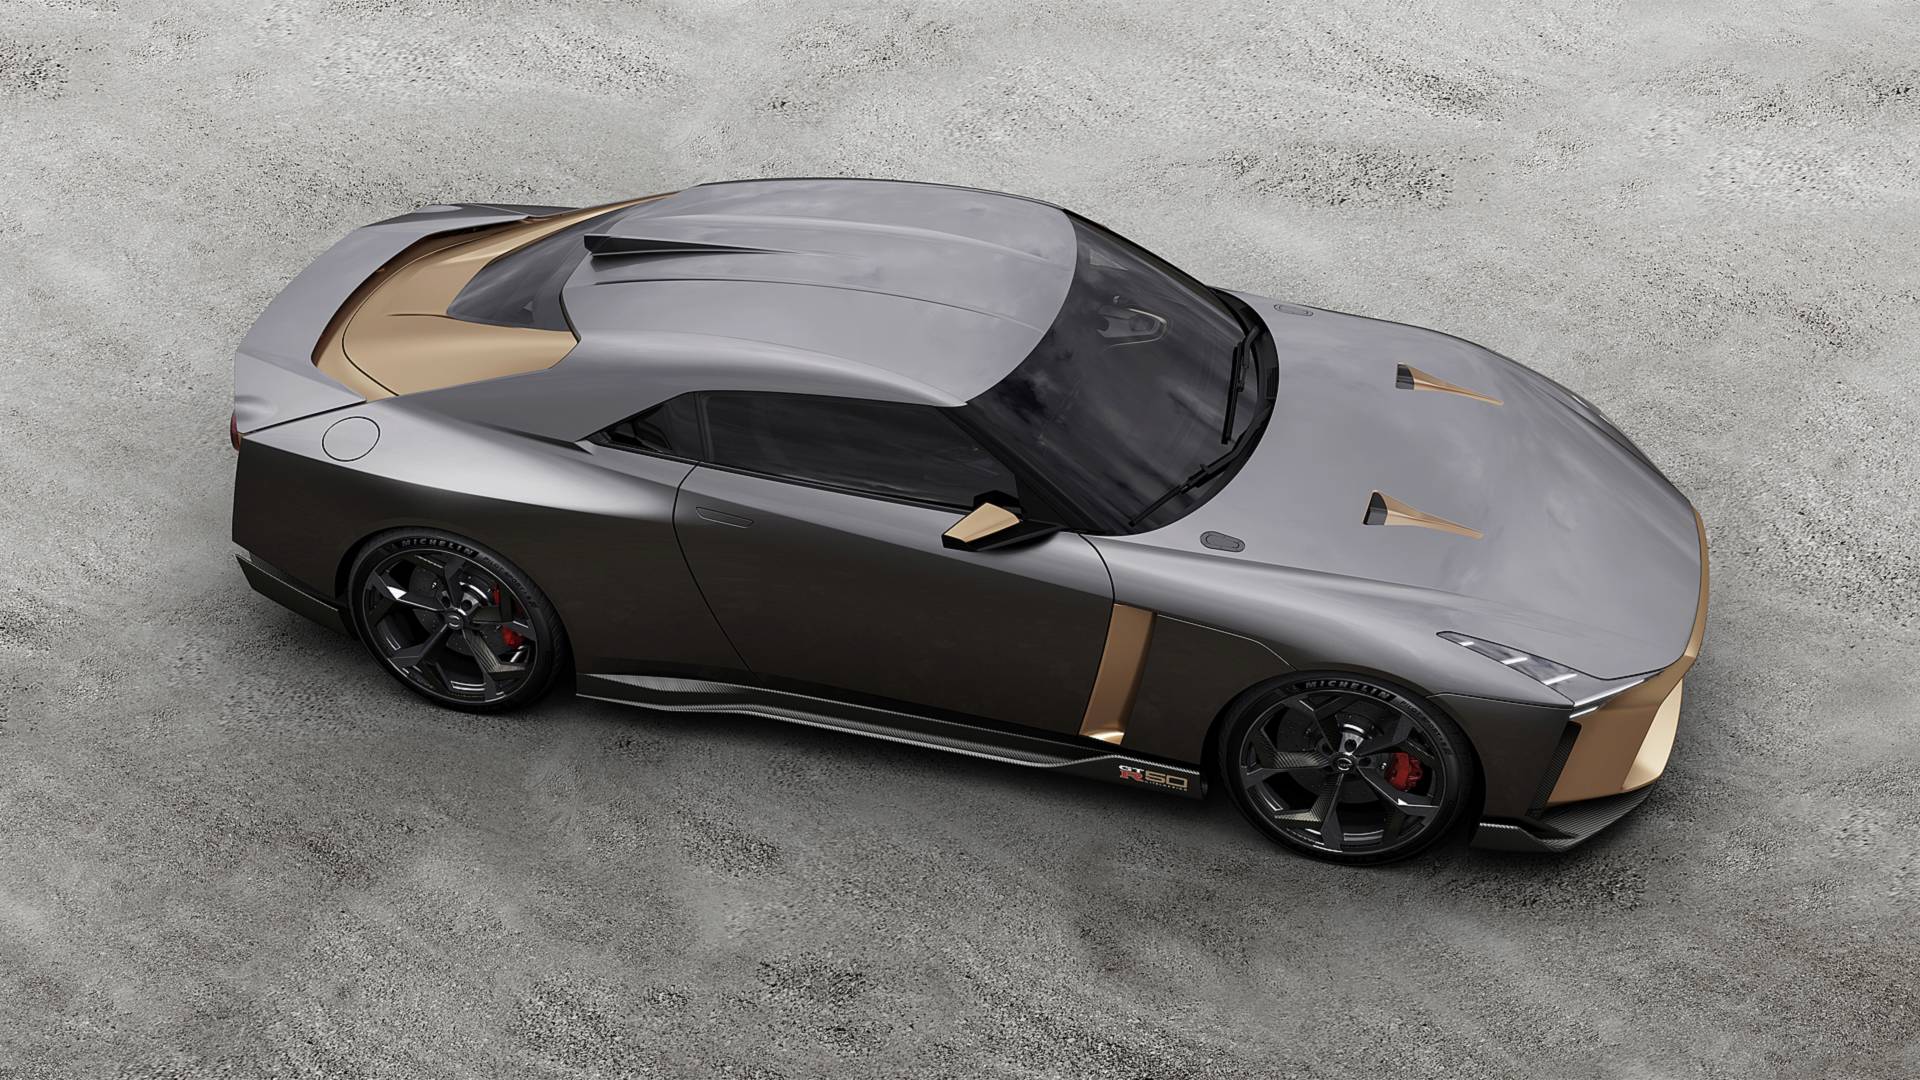 Преемники Nissan GT-R и 370Z могут получить гибридные моторы 1